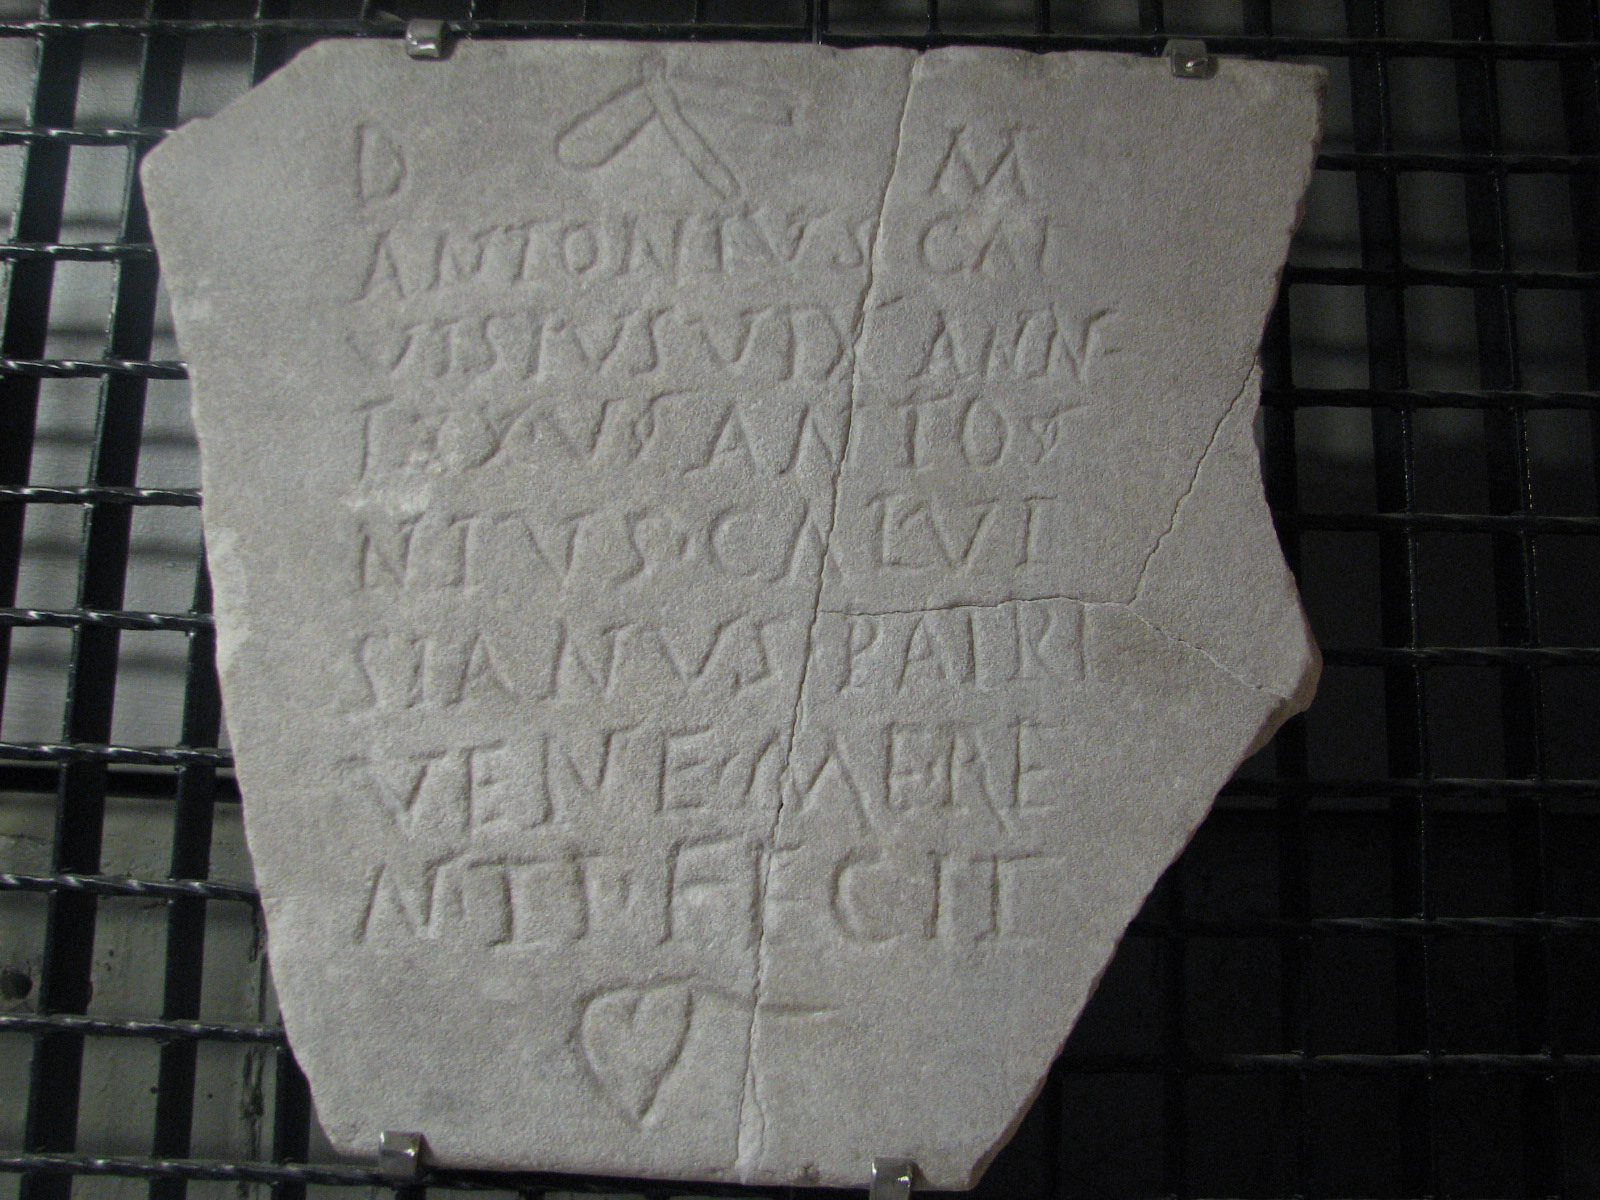 materiale di collezione museale (materiale lapideo, metallo) (Eta' romana imperiale)